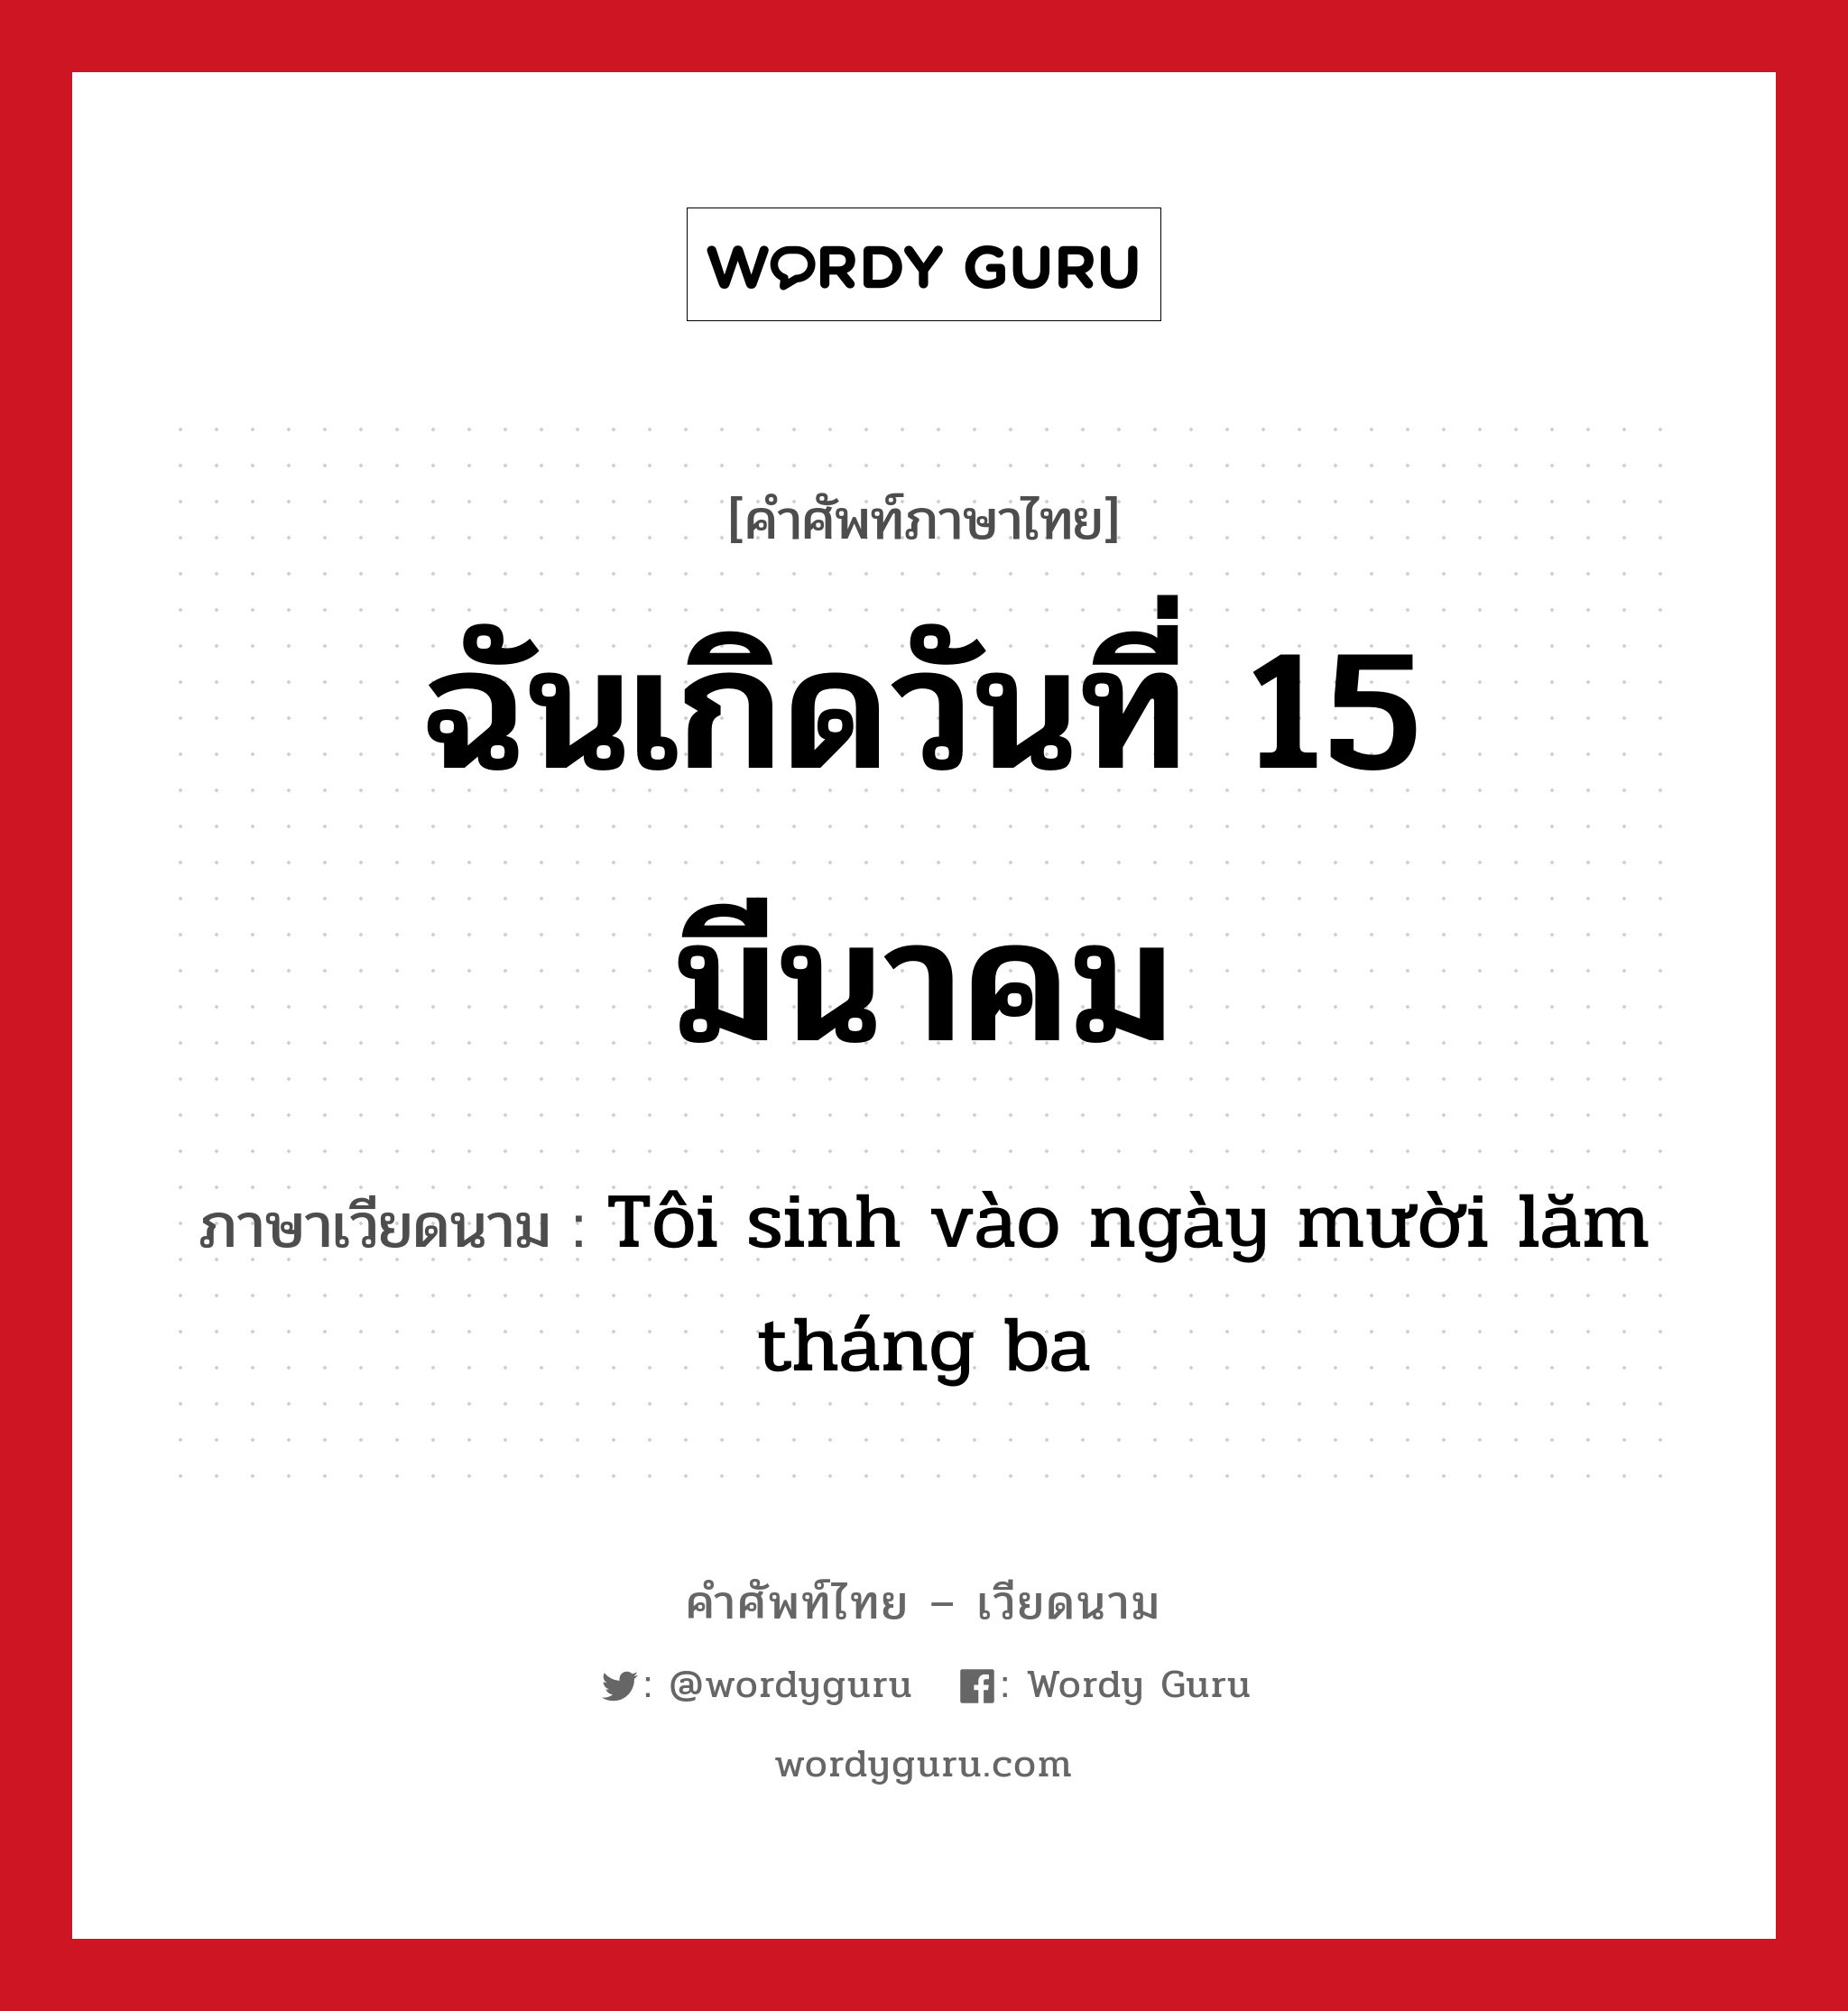 ฉันเกิดวันที่ 15 มีนาคม ภาษาเวียดนามคืออะไร, คำศัพท์ภาษาไทย - เวียดนาม ฉันเกิดวันที่ 15 มีนาคม ภาษาเวียดนาม Tôi sinh vào ngày mười lăm tháng ba หมวด การนับเลขและเวลา หมวด การนับเลขและเวลา